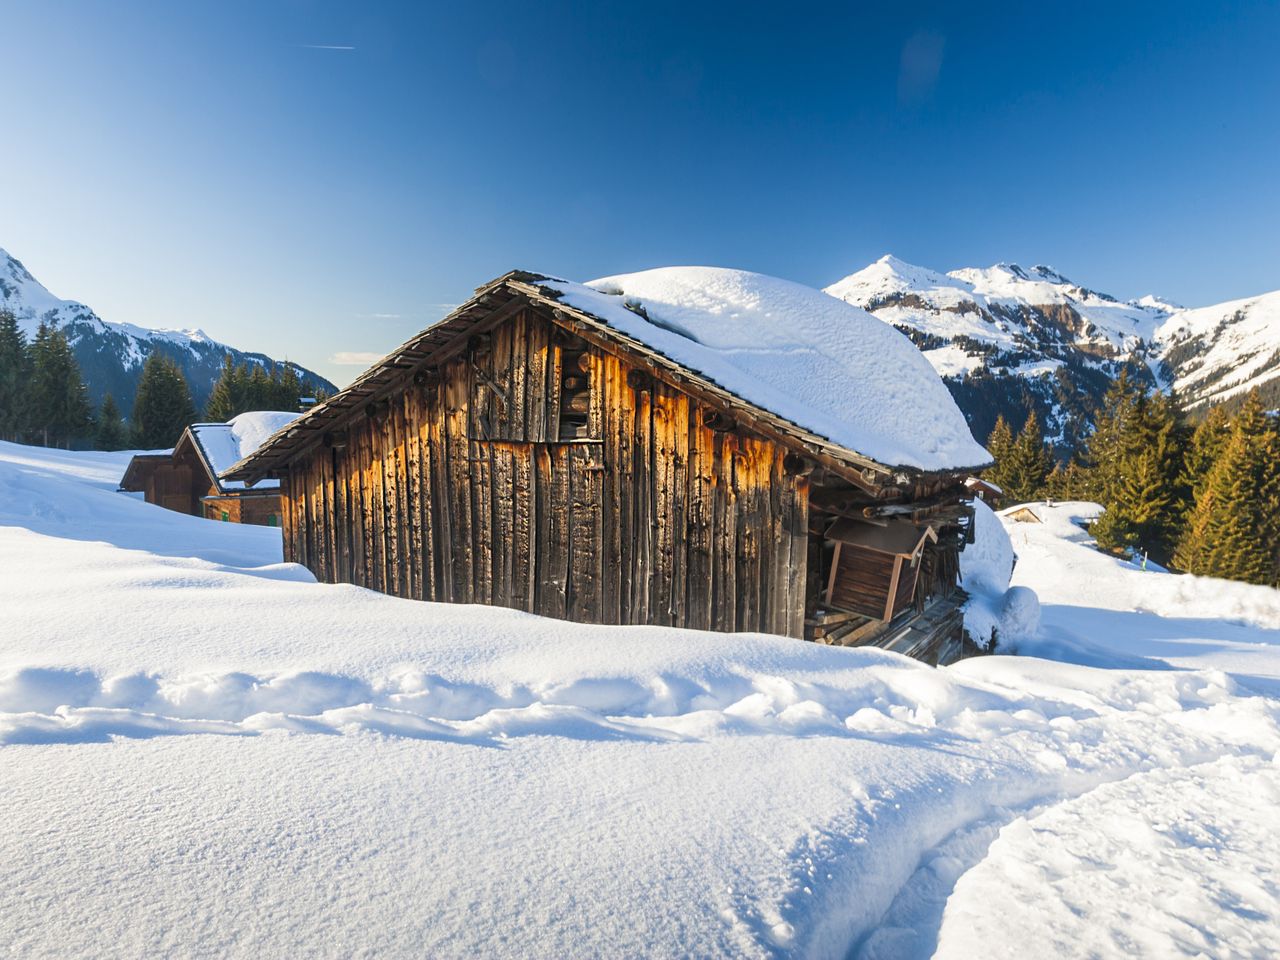 11 Tage Wellness & Natur: Lech am Arlberg genießen